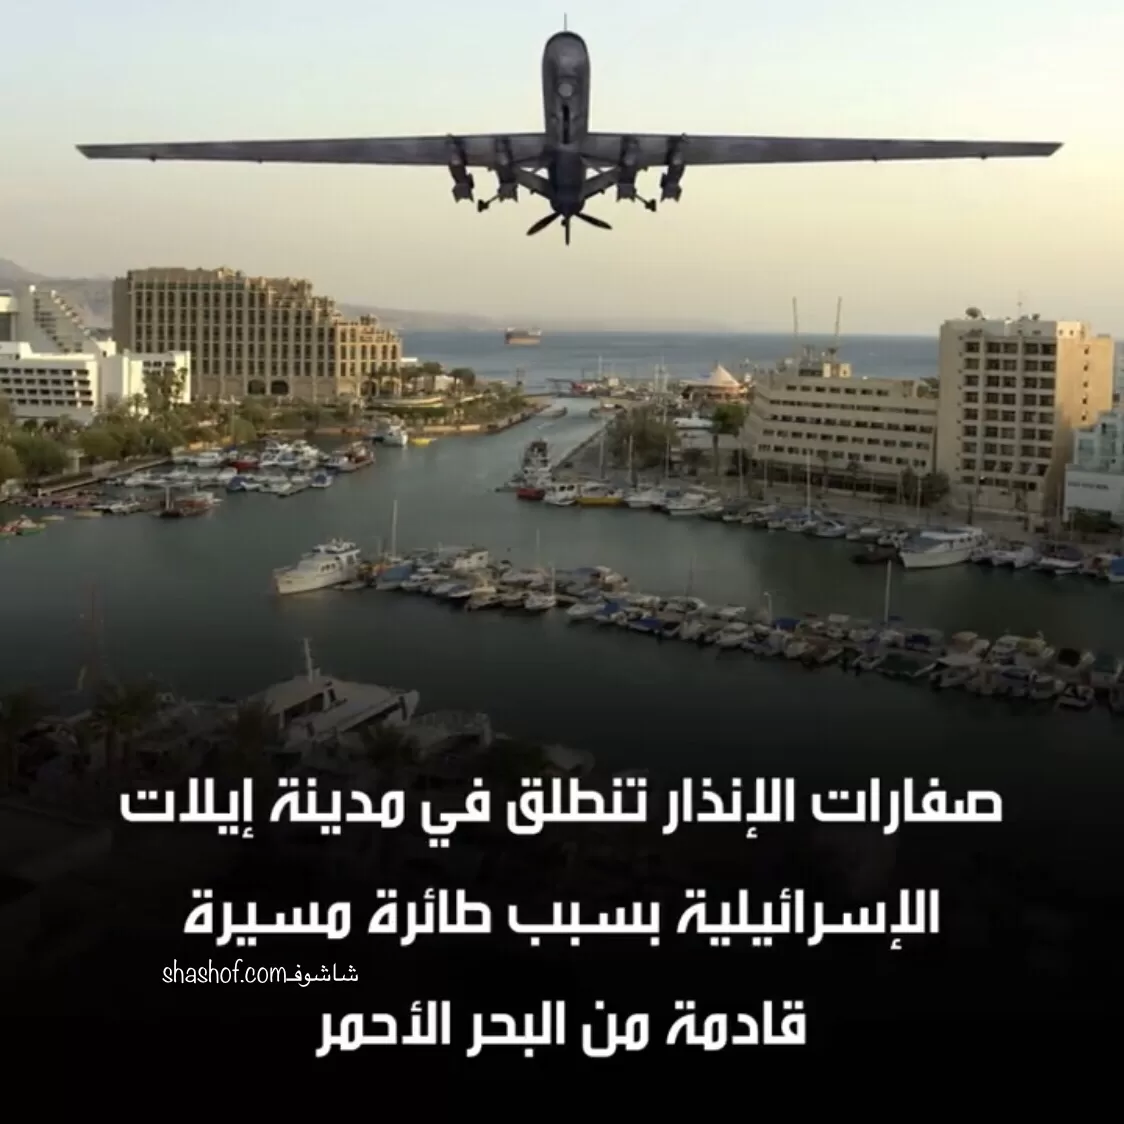 وصول الطائرات المسيرة اليمنية وصواريخ كروز الى اسرائيل والصفارات تدوي (فيدي)​